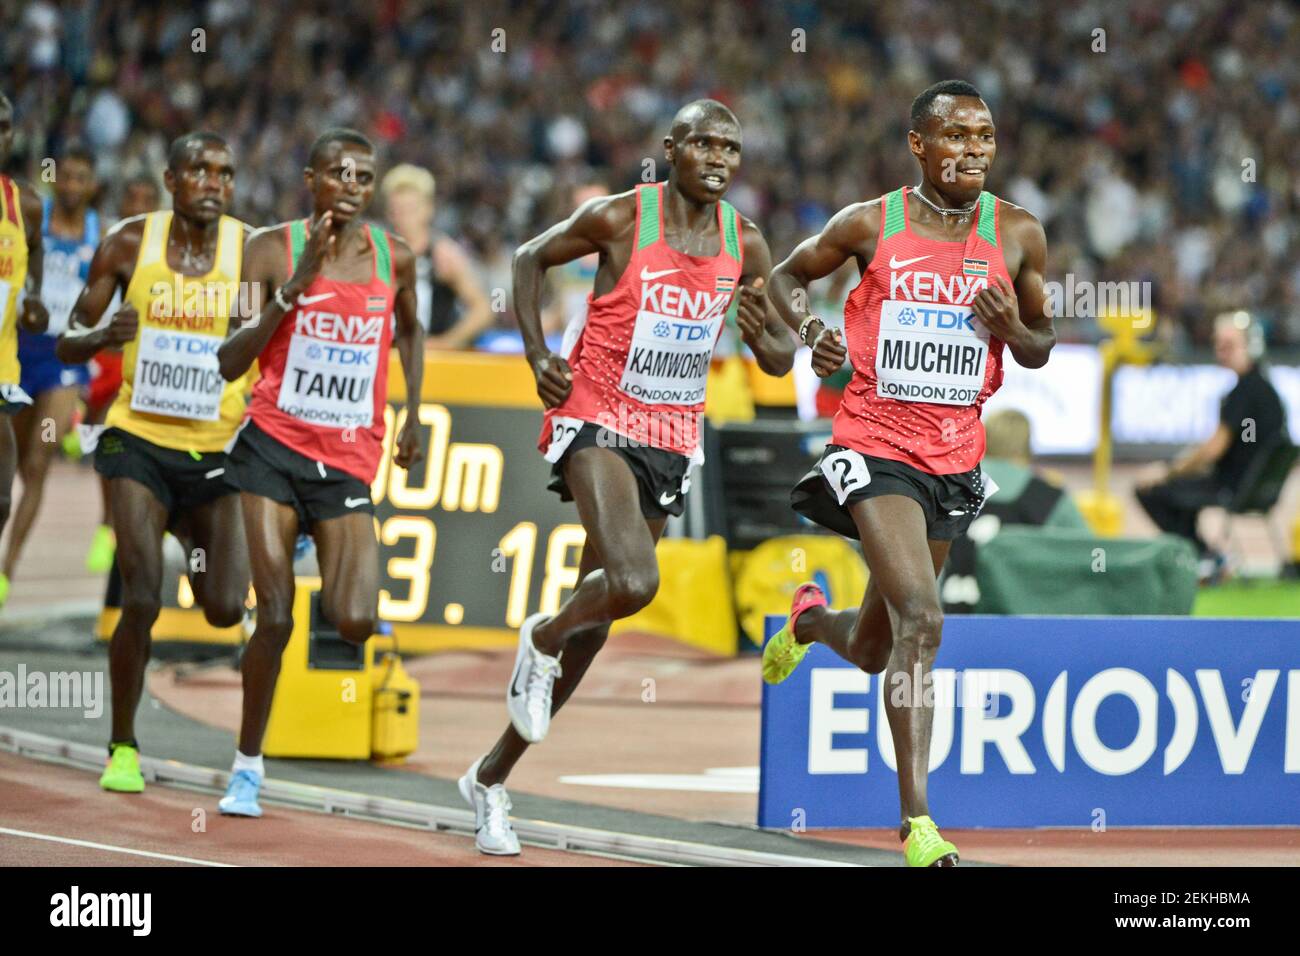 Atletas kenianos Gabriel Muchiri, Geoffrey Kamworor, Paul Kipngetich Tanui (Medalla de Bronce). 10000 metros hombres - Campeonato Mundial de la IAAF Londres 2017 Foto de stock